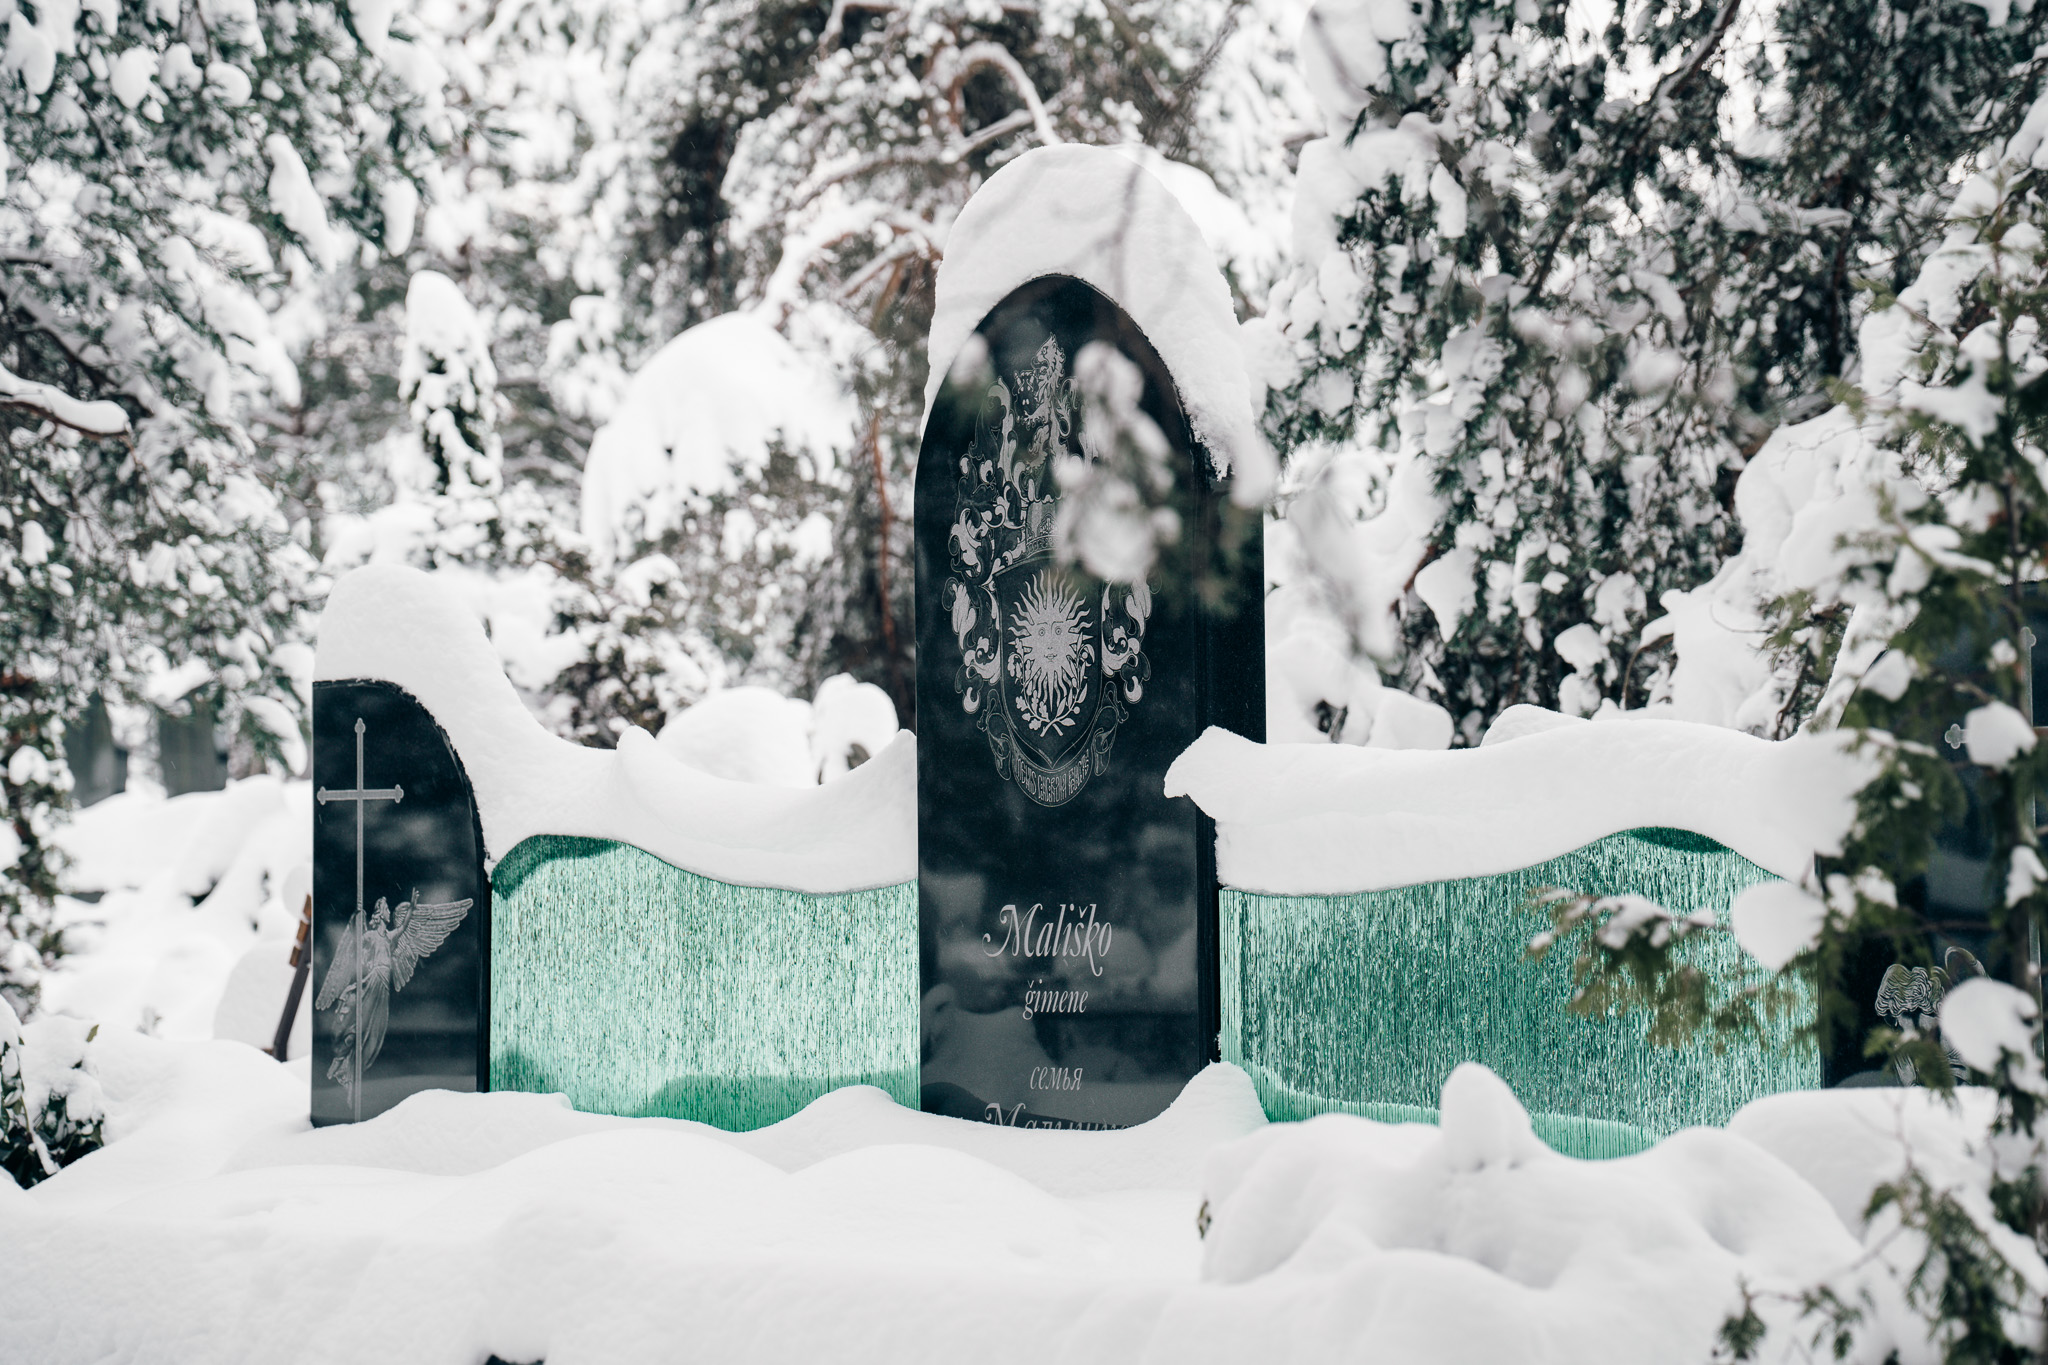 Красивое стеклянное надгробие с гранитом, красивое надгробие, комбинированное надгробие, специальные надгробные памятники, надгробия из комбинированных материалов, скульптурные надгробия из стекла, семейная могильная композиция